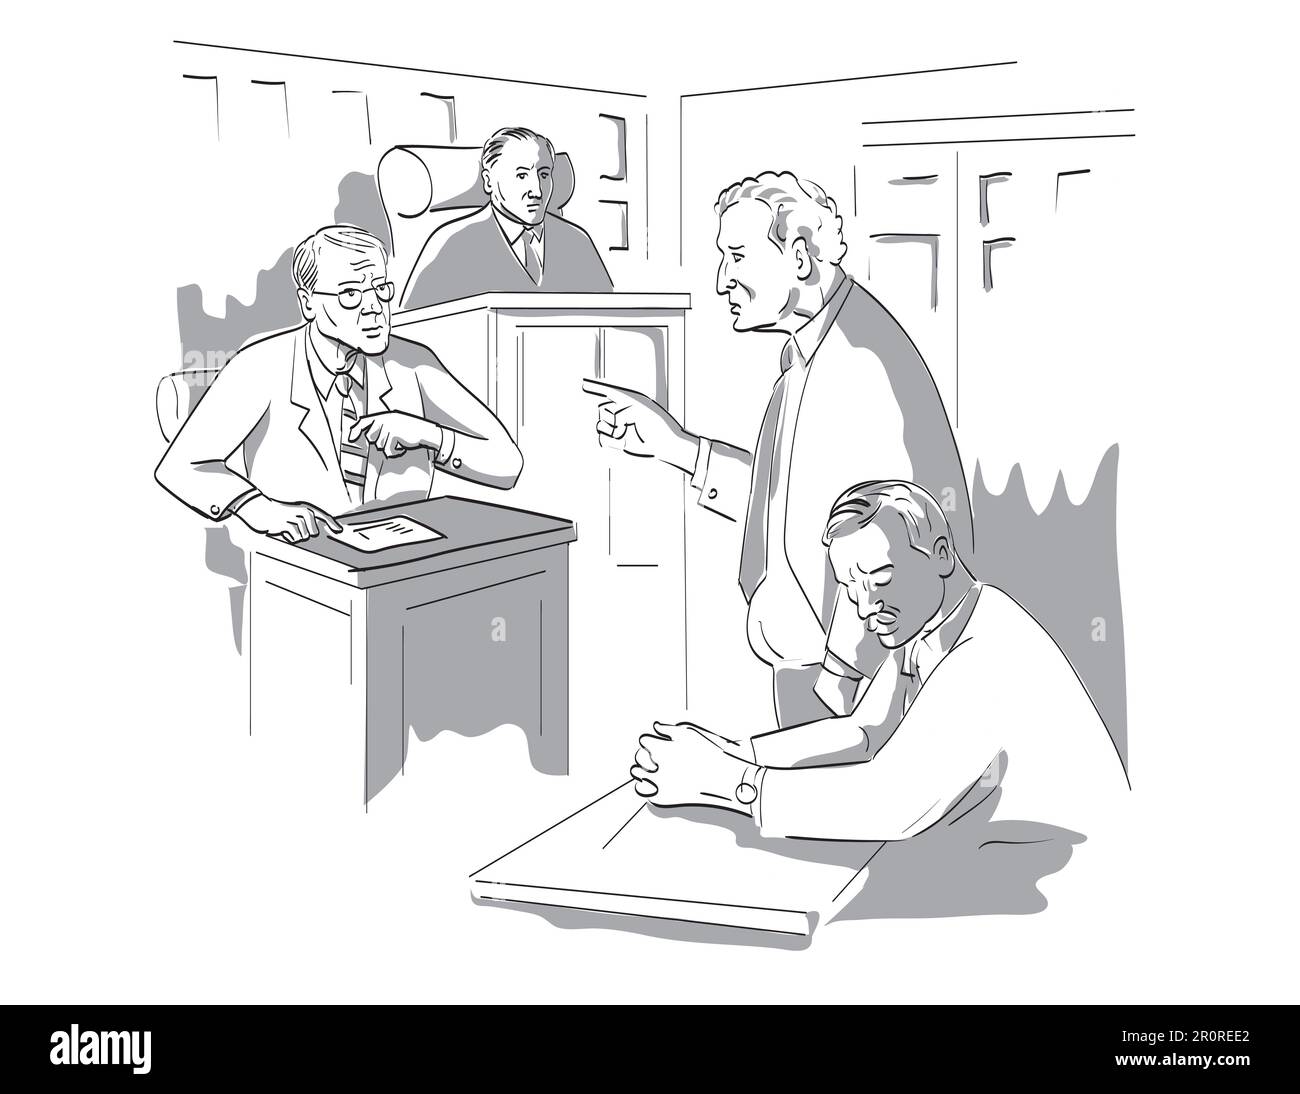 Zeichenstift- und Tintenzeichnung eines Gerichtsverfahrens mit Richter, Anwalt, Angeklagter, Kläger, Zeugen und Geschworenen in einem Gerichtsverfahren Stockfoto